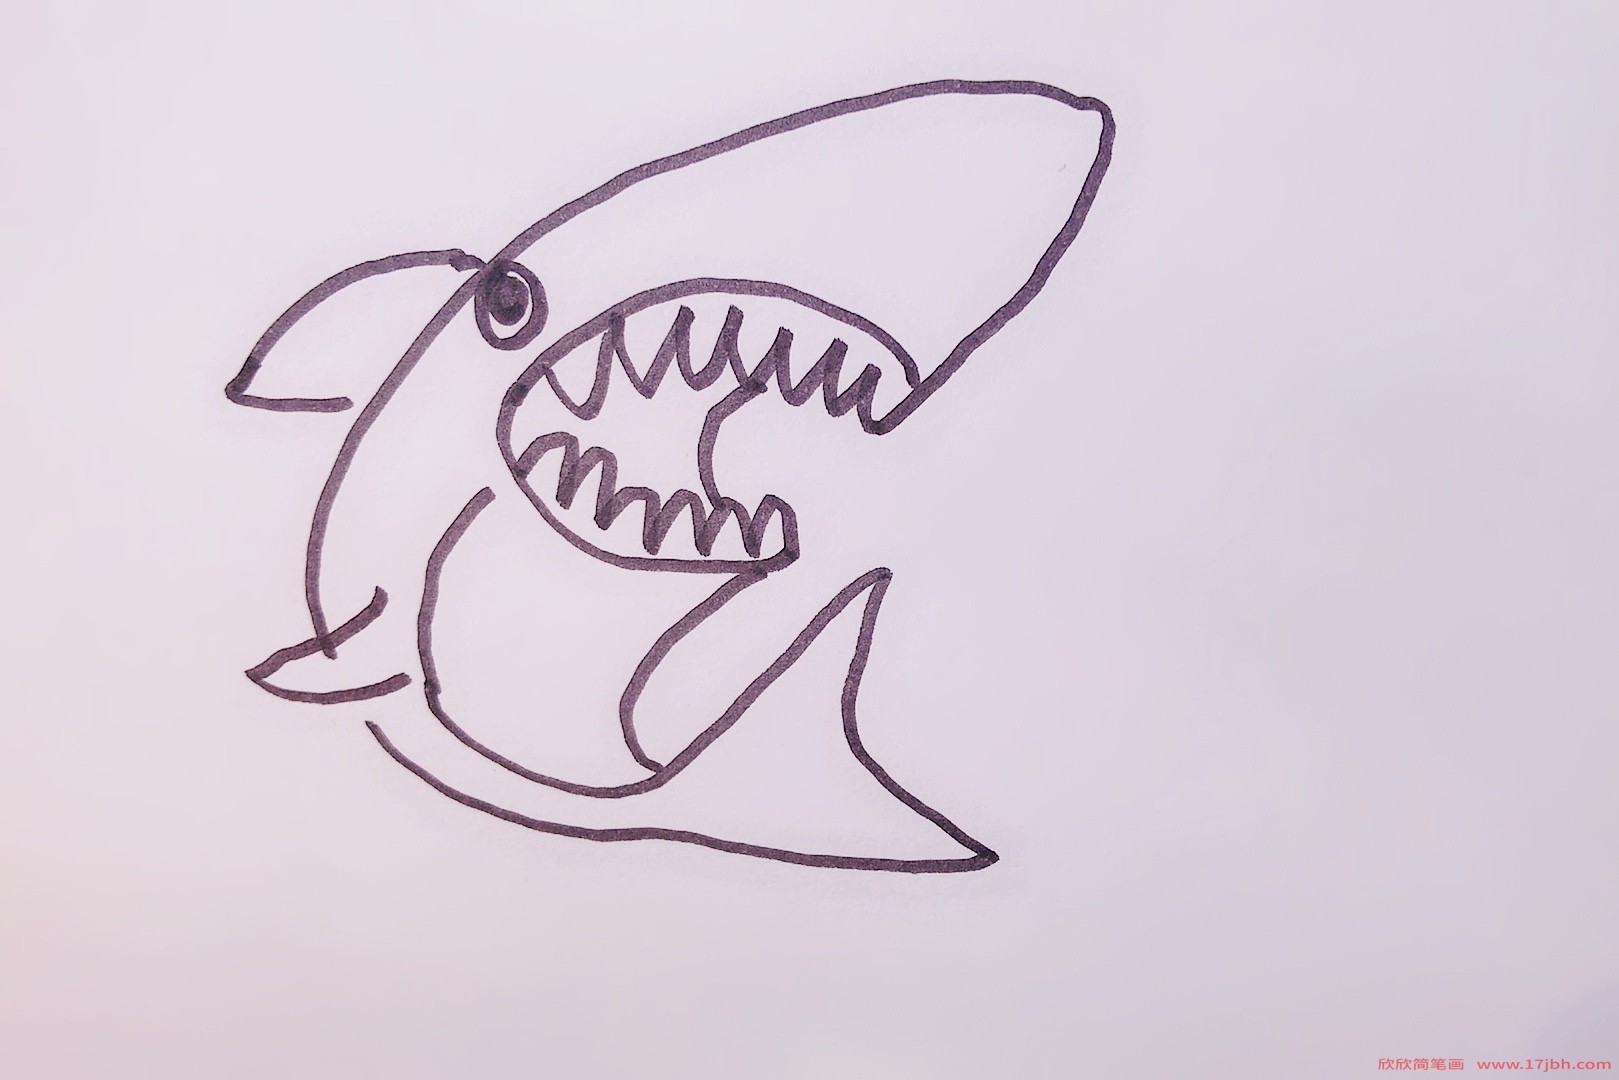 鲨鱼喷水图片简笔画图片